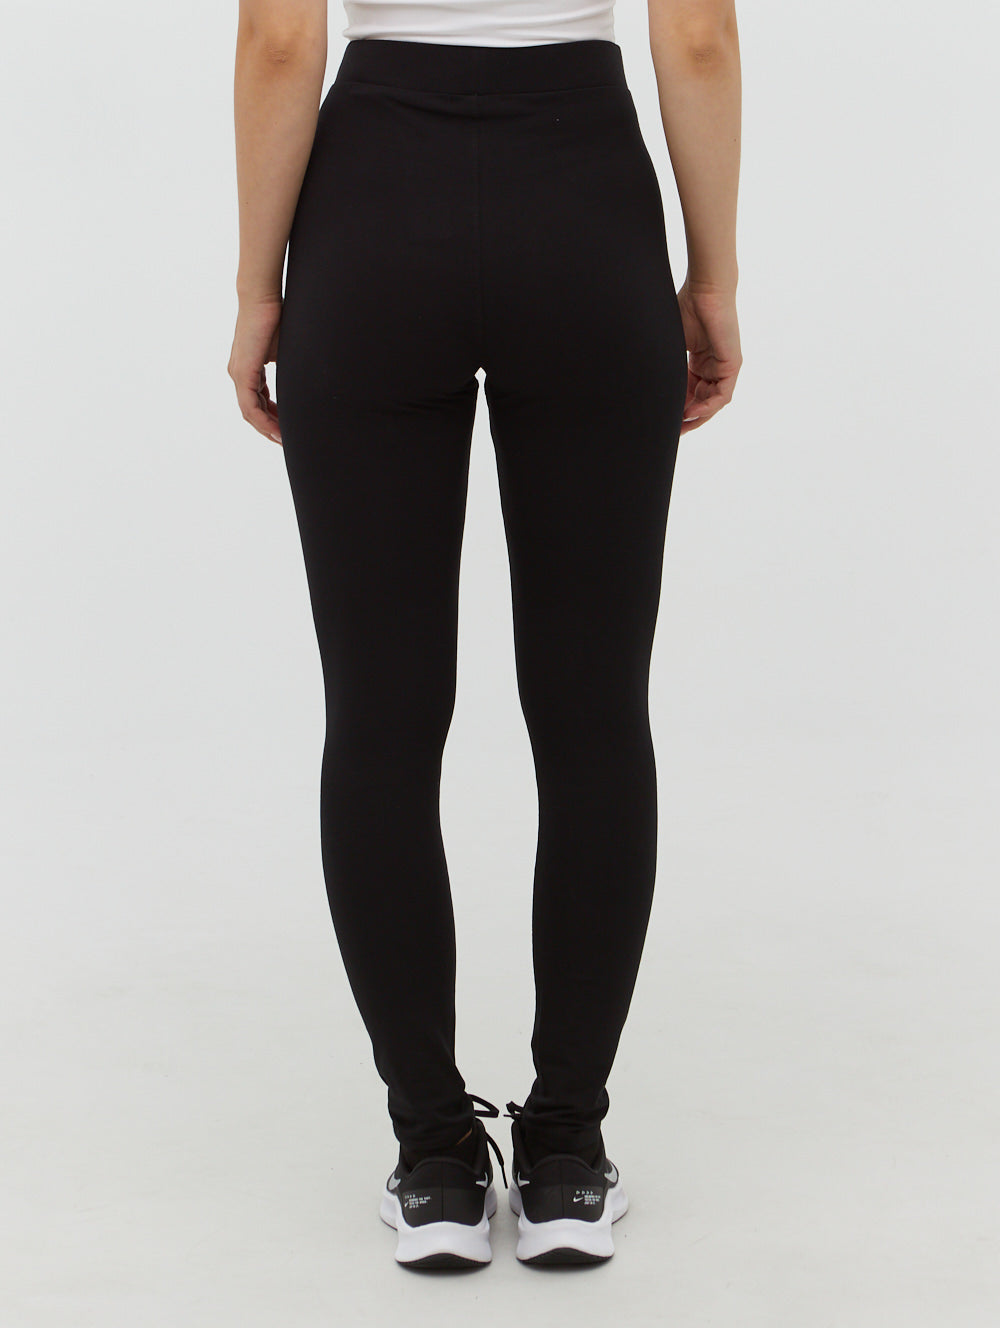 KS-QON BENG Women's Straight Yoga Pants Ladybug Black Spots Print